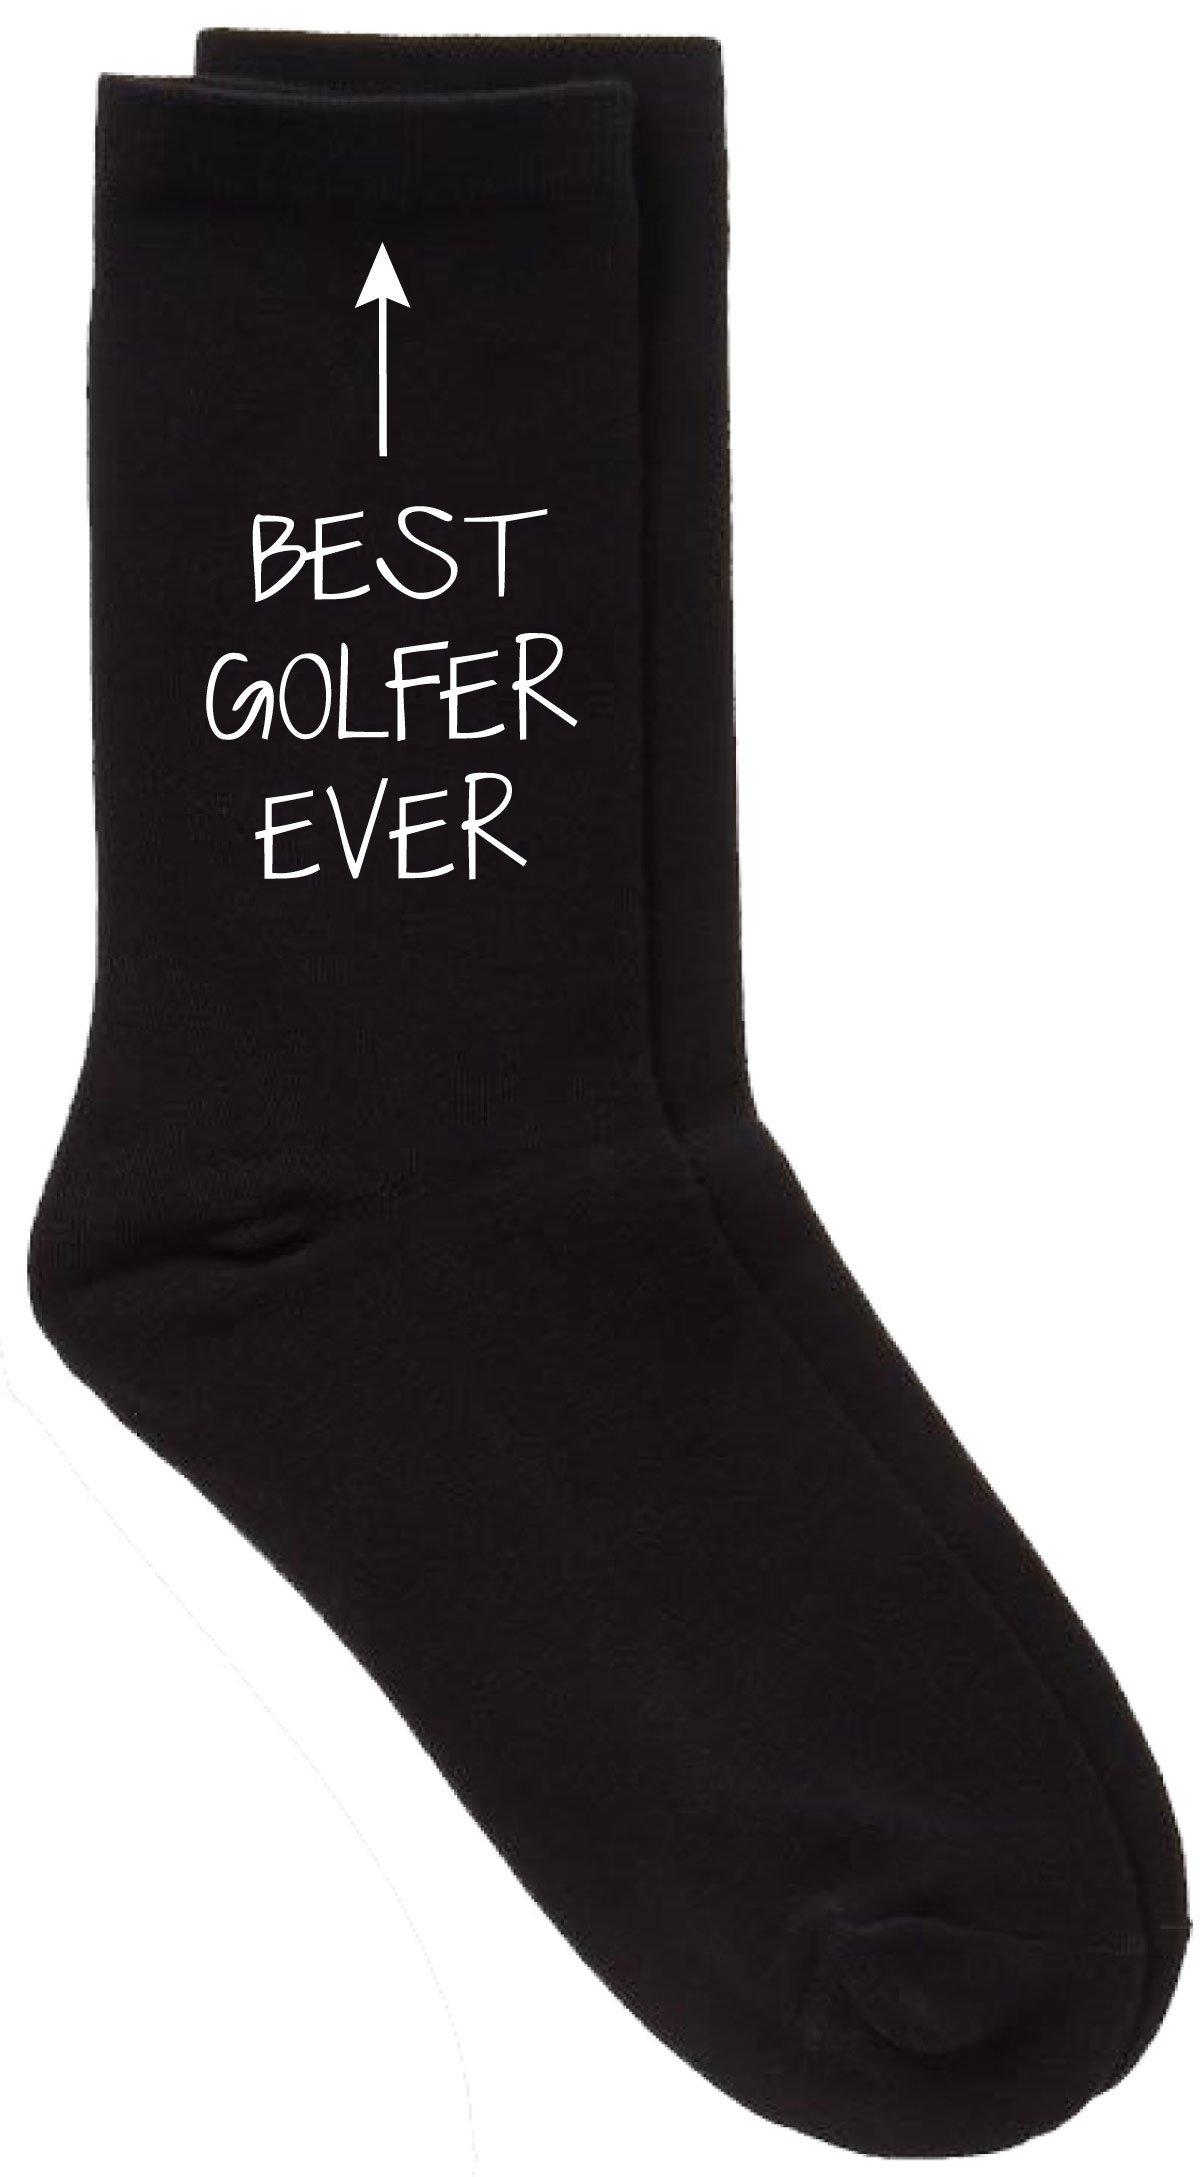 Best Golfer Ever Black Calf Socks